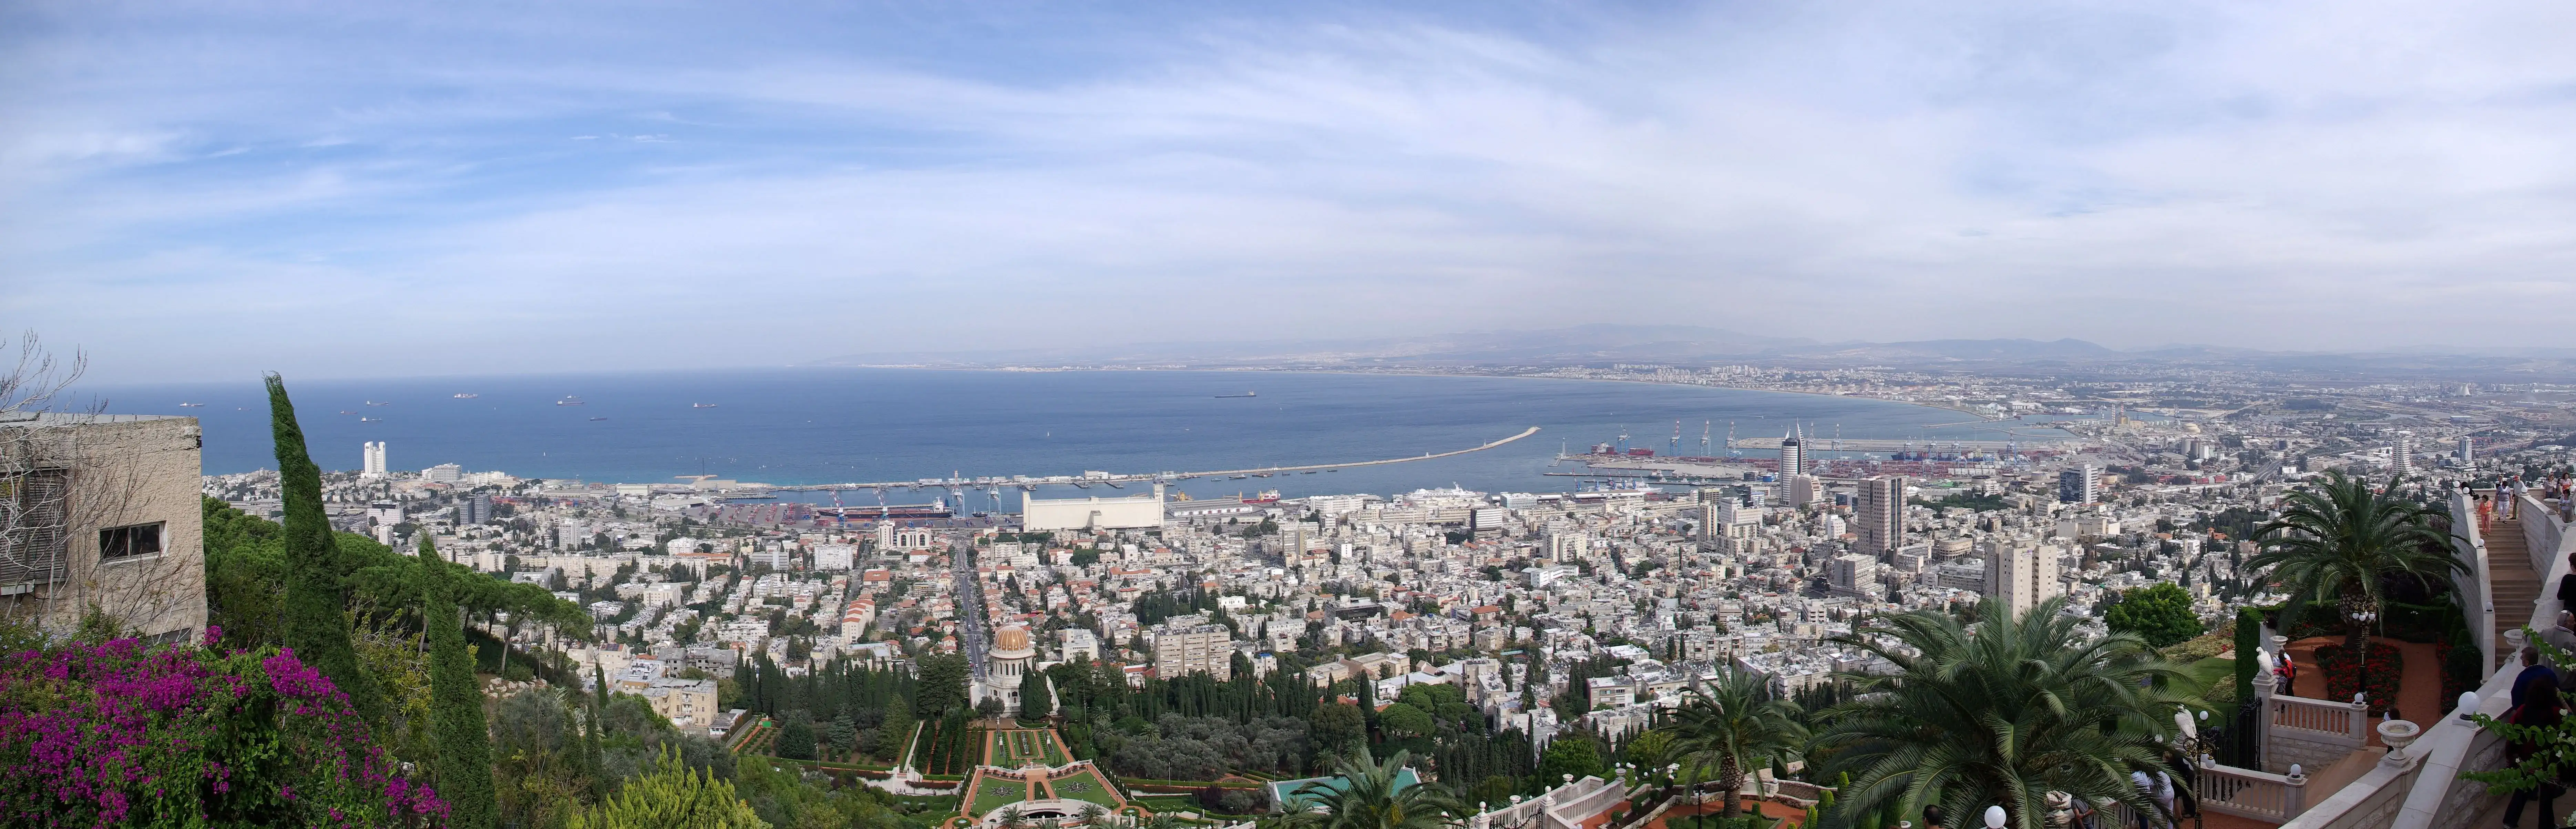 Palestine-Haifa-Bahai-Gardens-029.webp